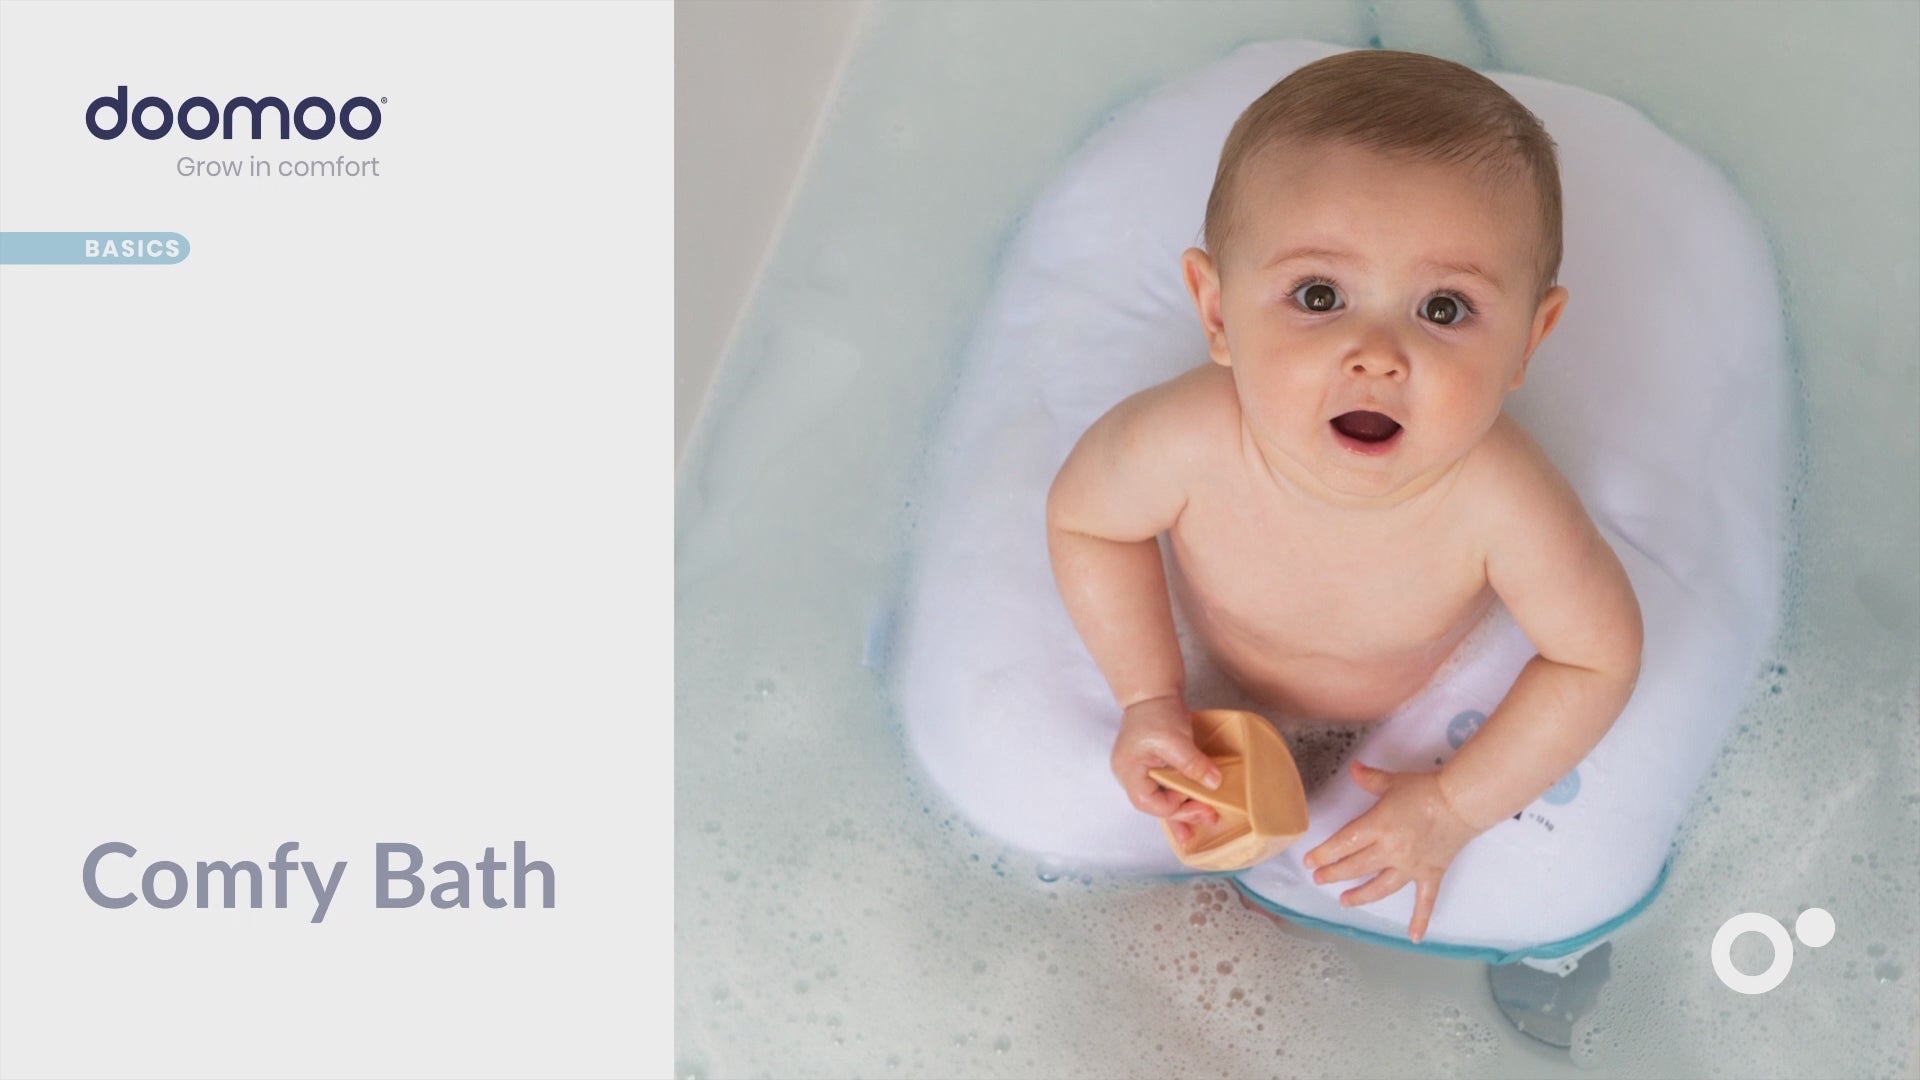 Coussin de bain pour baigner votre bébé les mains libres. Il peut s'asseoir ou se coucher en toute sécurité dans l'eau. Sans danger pour le bébé et sans douleur pour les parents.